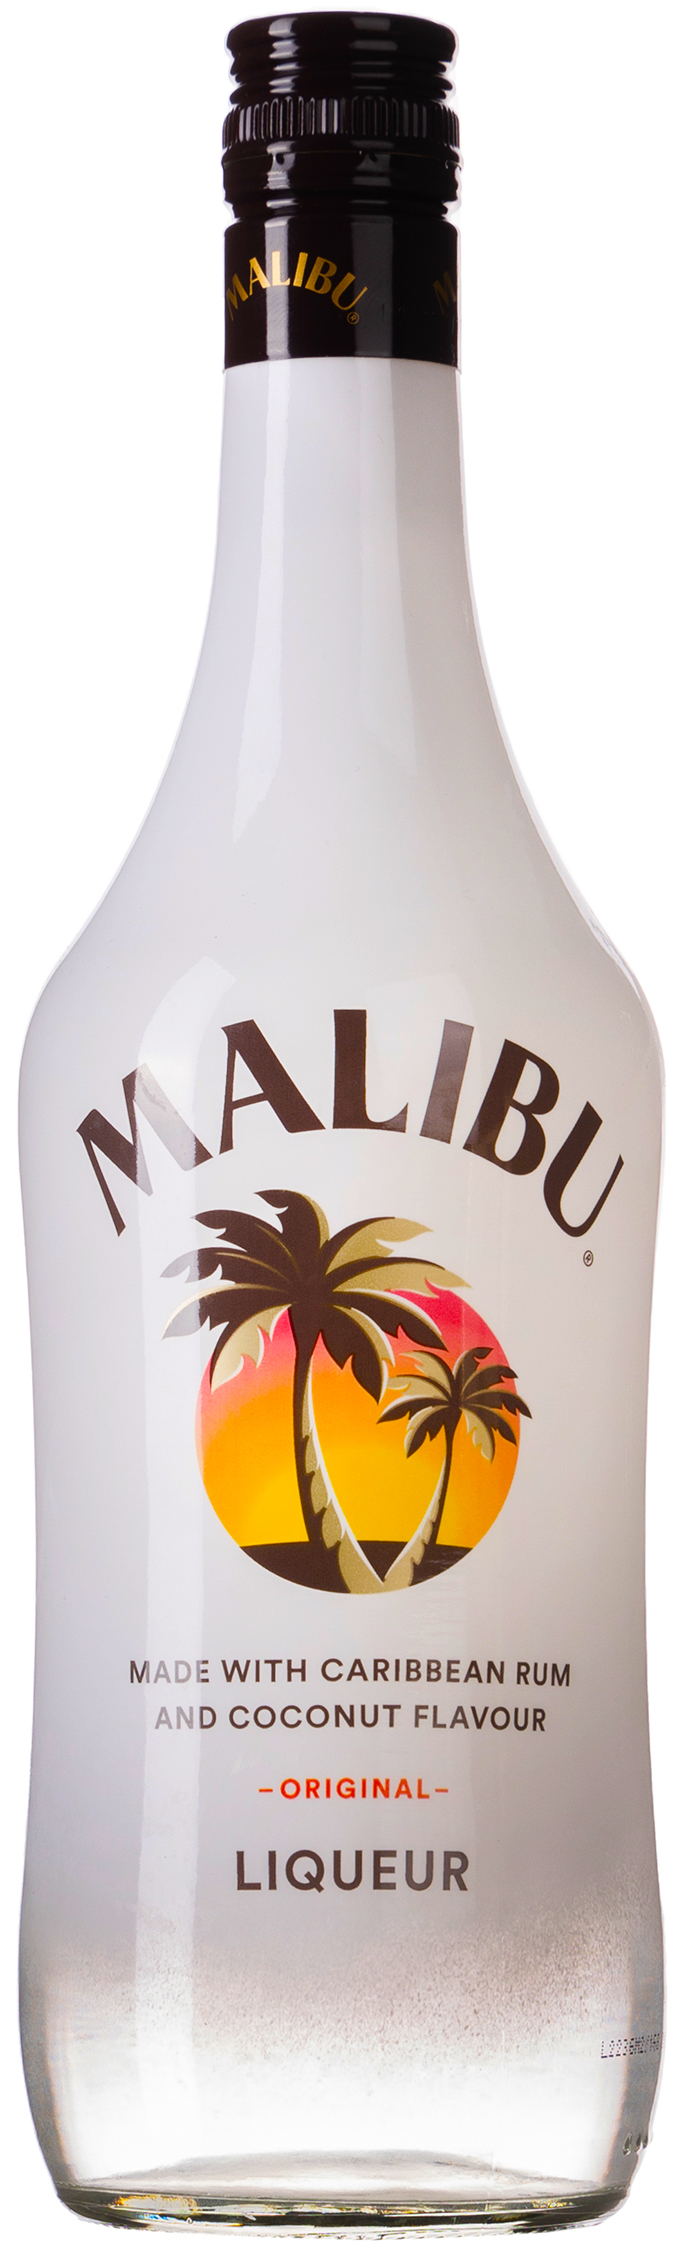 Malibu Kokoslikör 21% vol. 0,7L